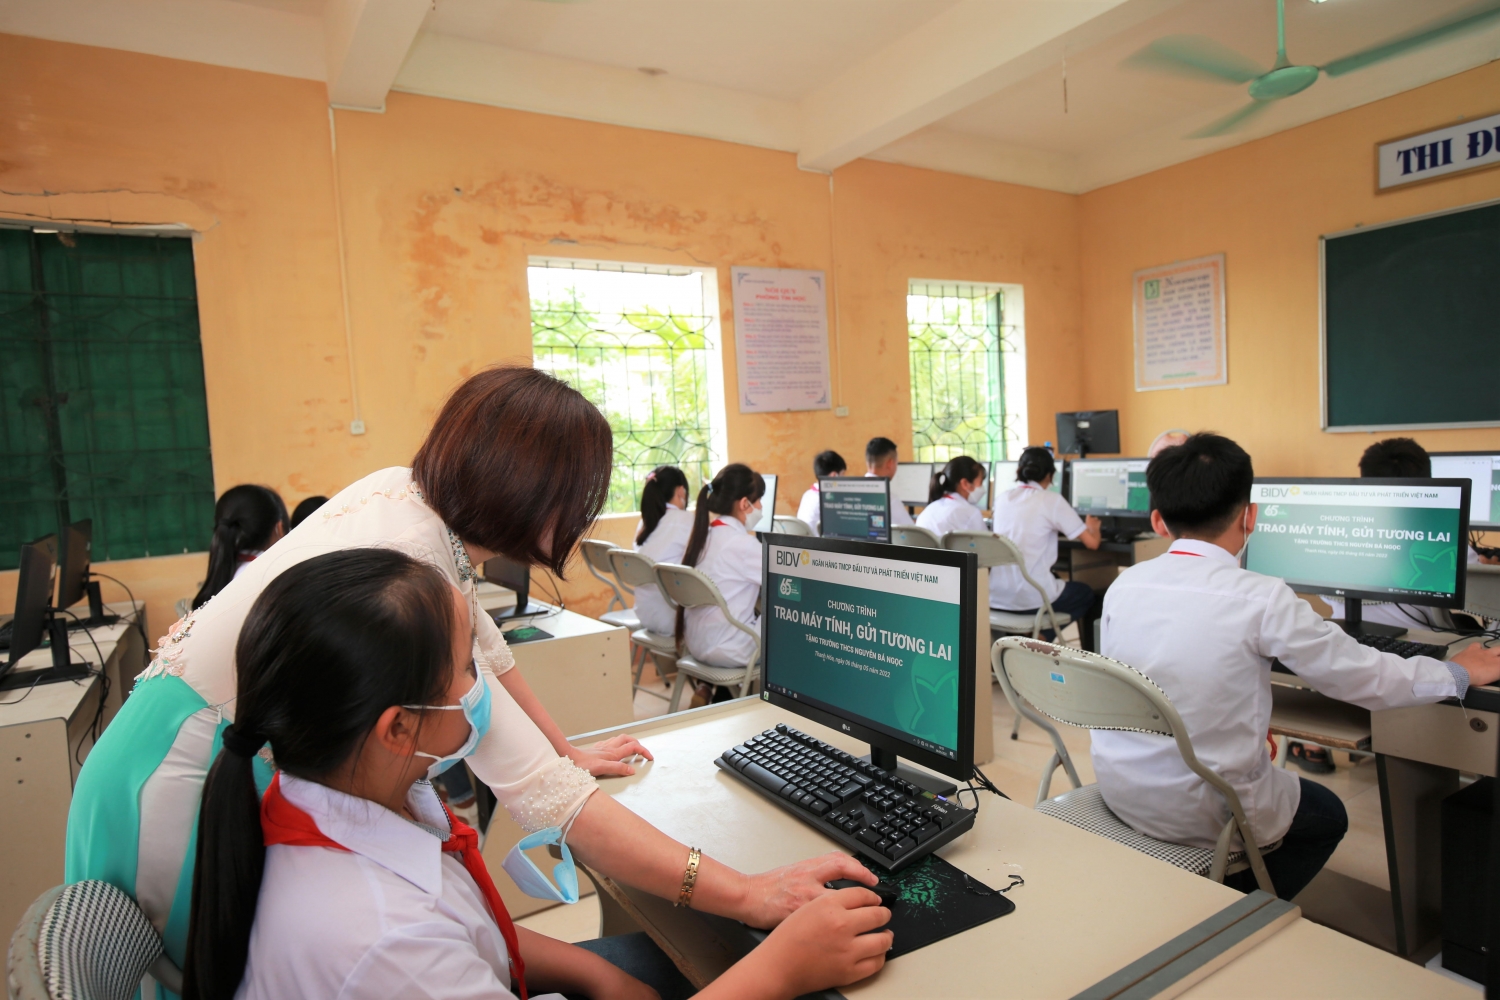 BIDV thực hiện chương trình “Trao máy tính, gửi tương lai” và trồng cây xanh tại Thanh Hóa